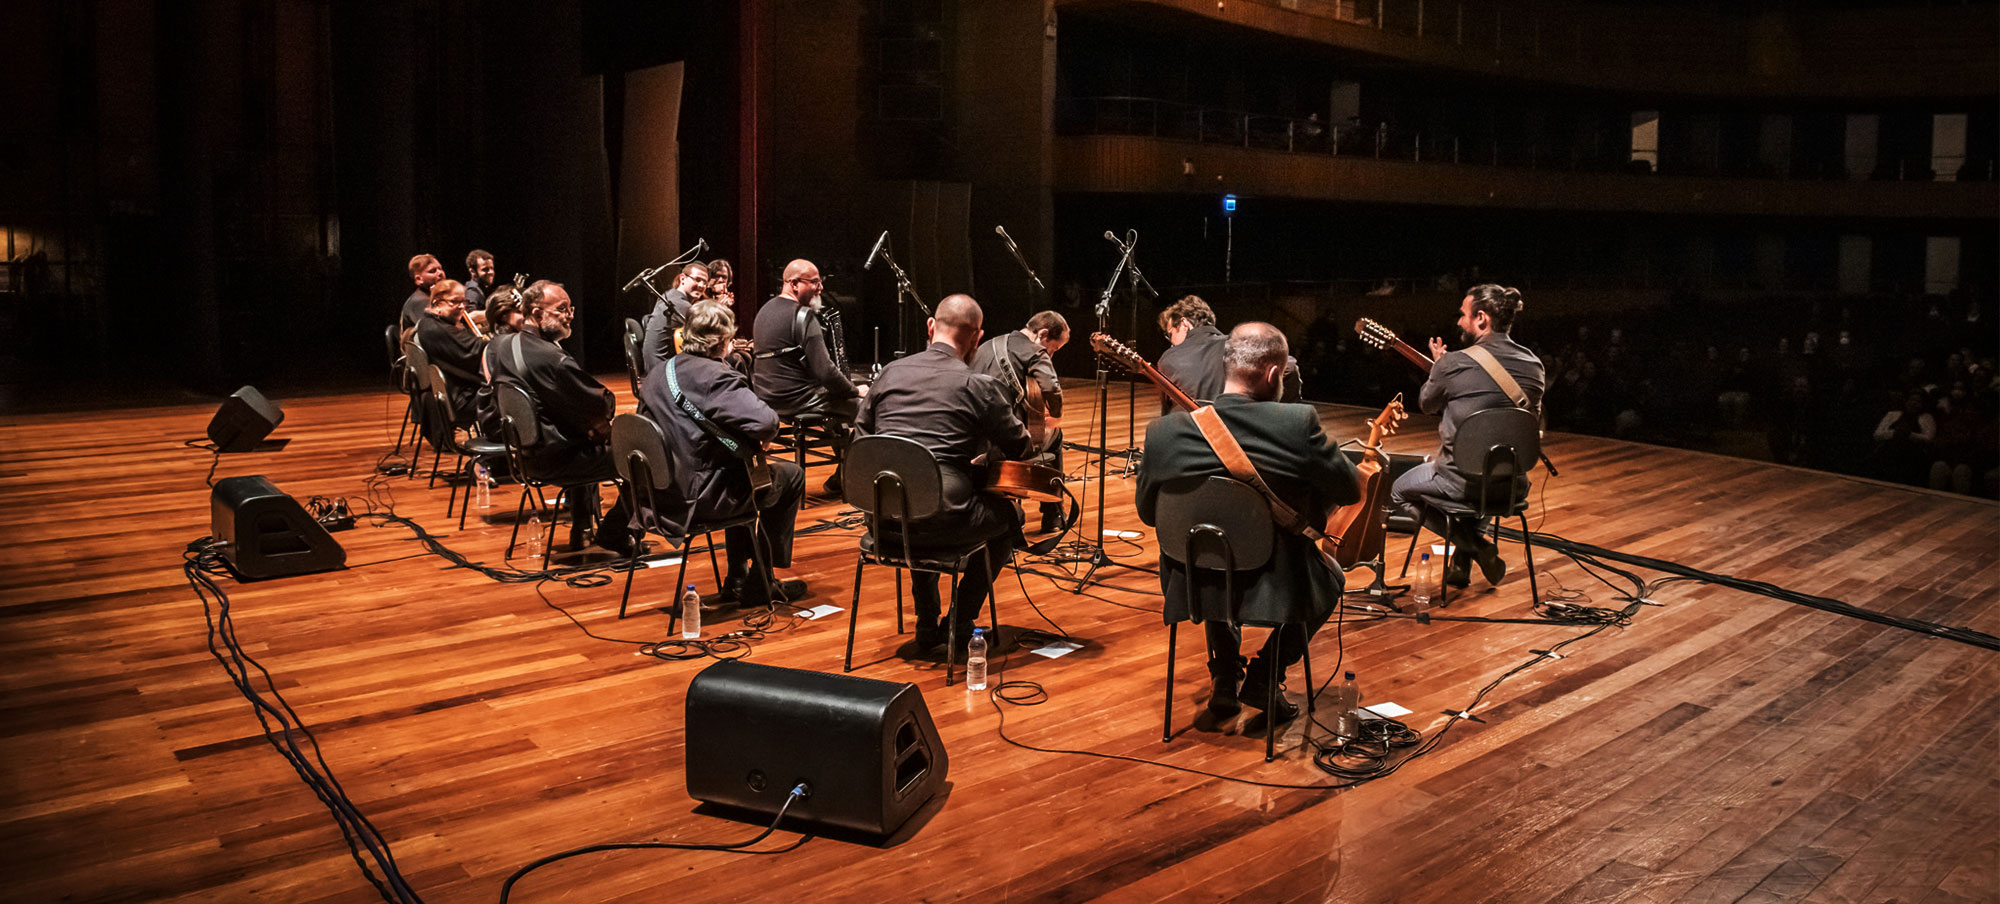 Vista panorâmica em apresentação da Orquestra Filarmônica de Violas, na cidade de Piracicaba